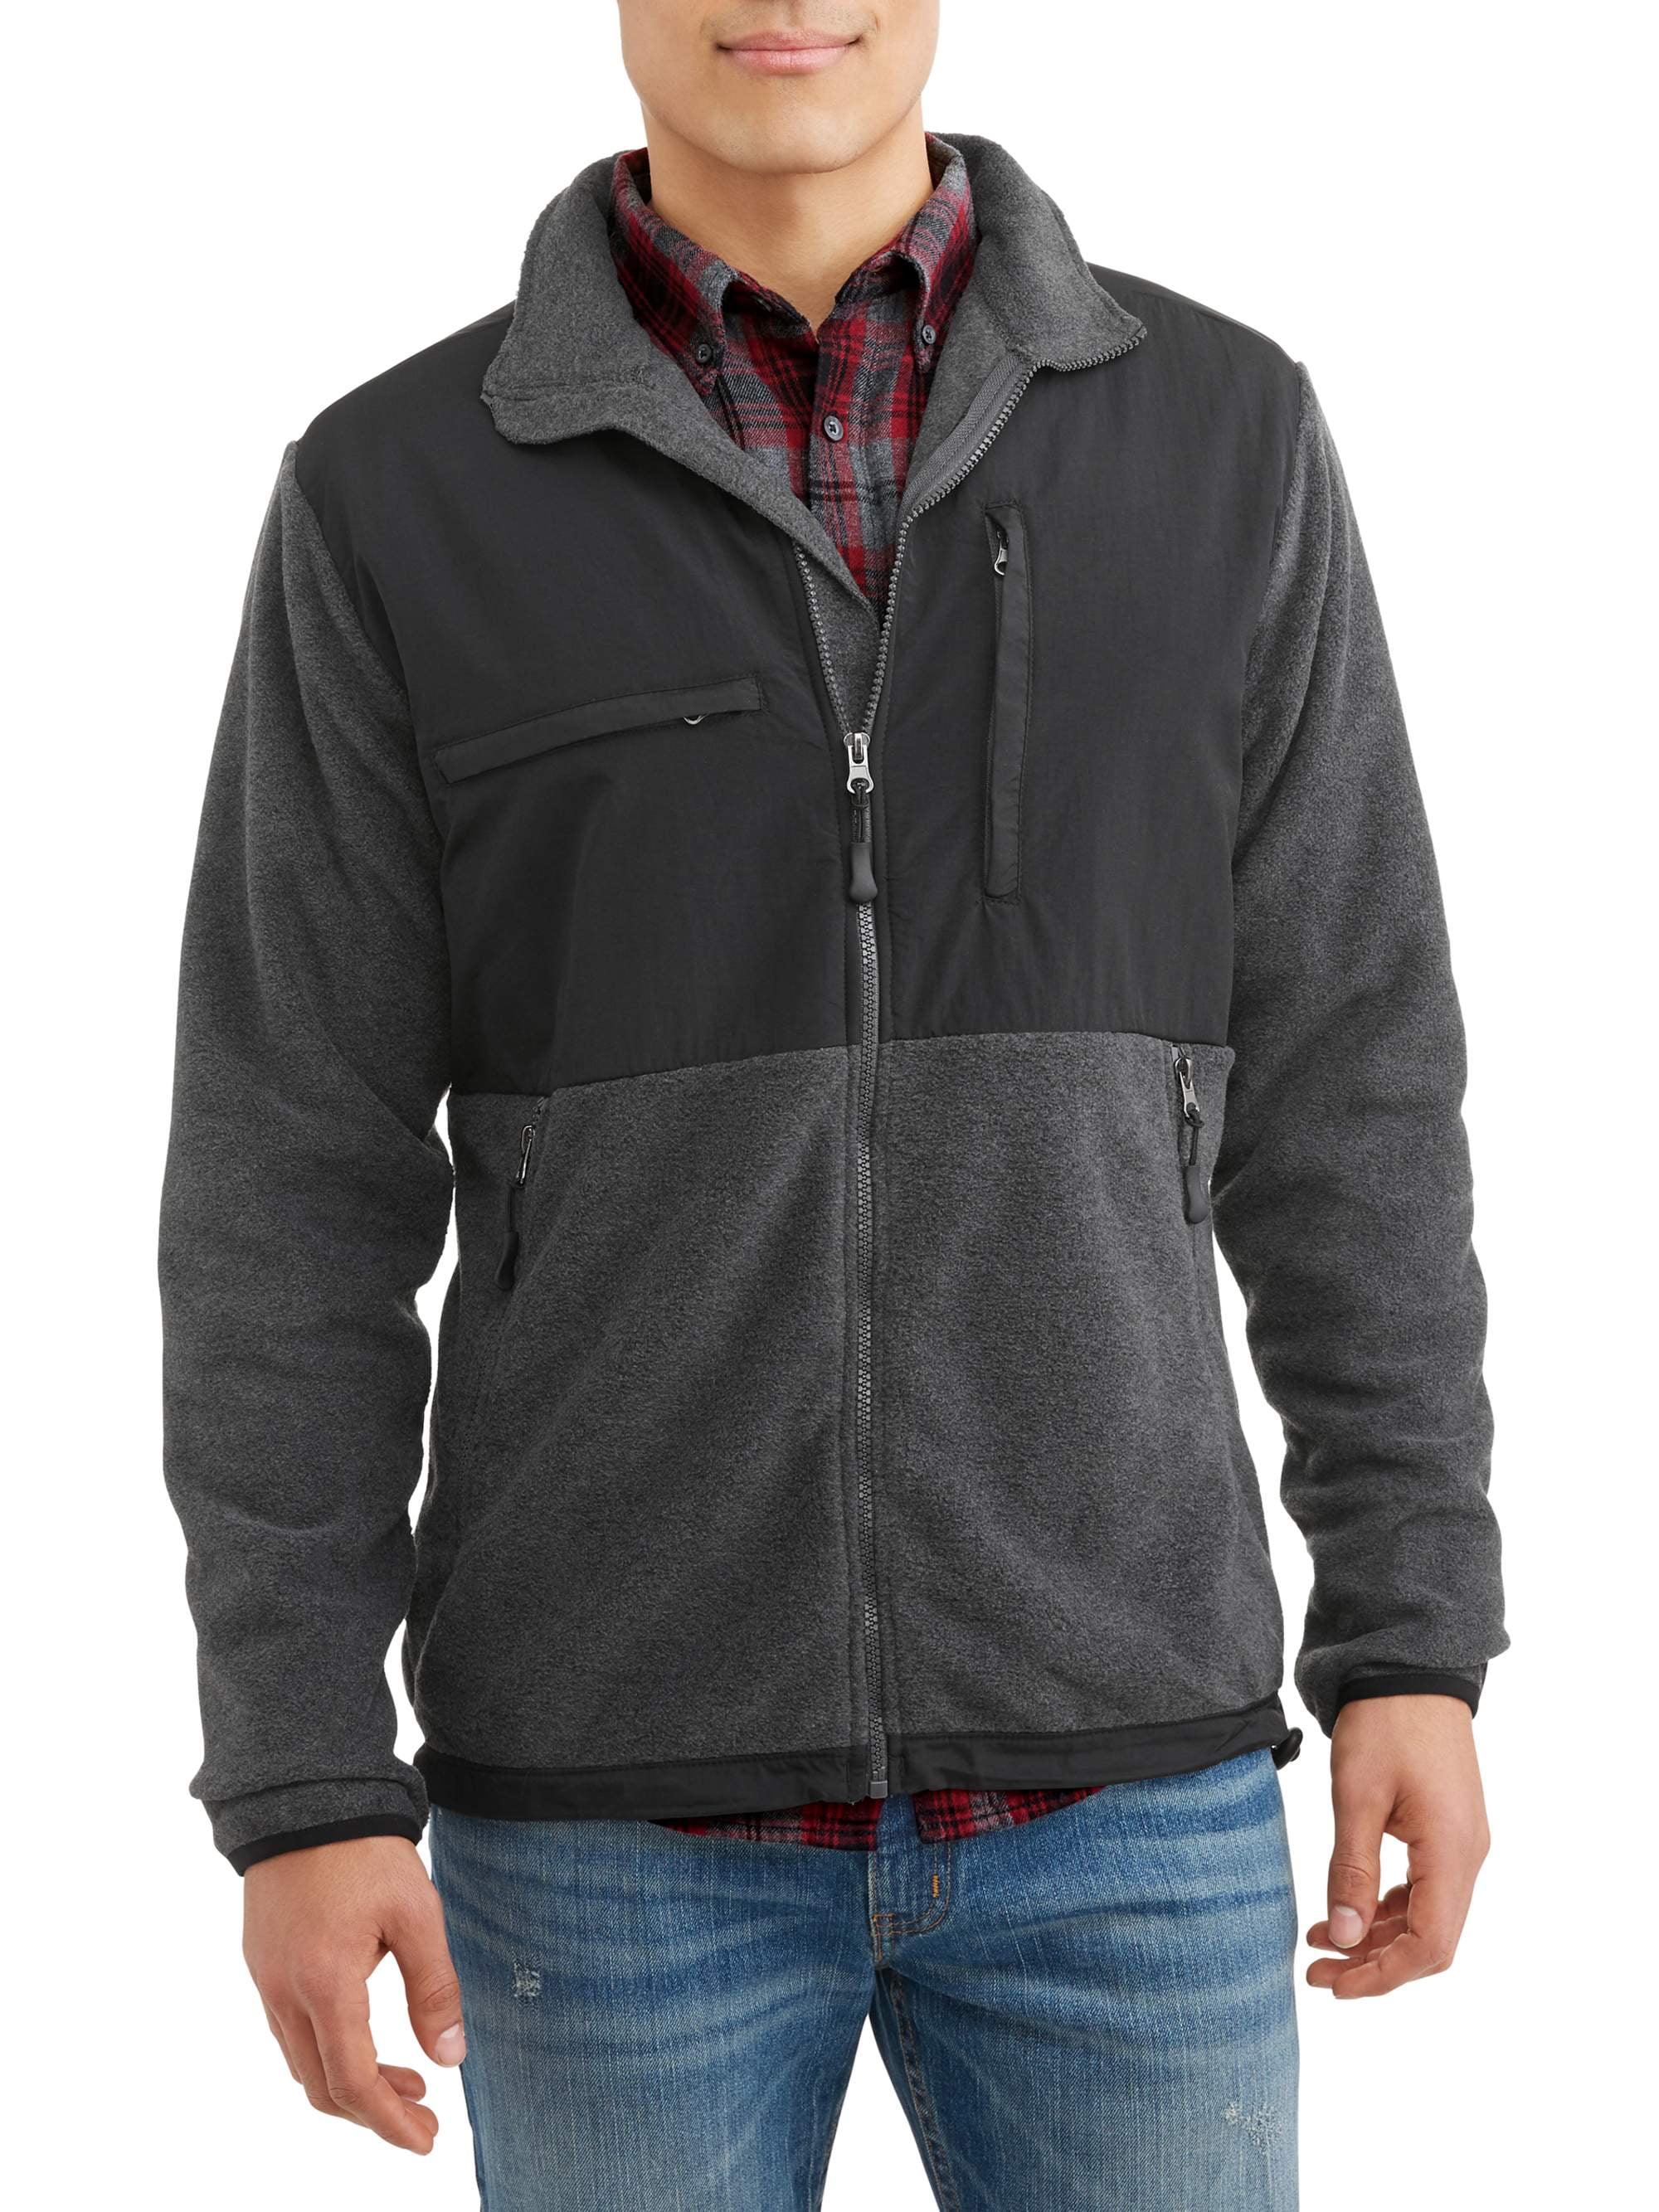 Burnside Polar Fleece Zip Front Jacket, up to Size 2XL - Walmart.com